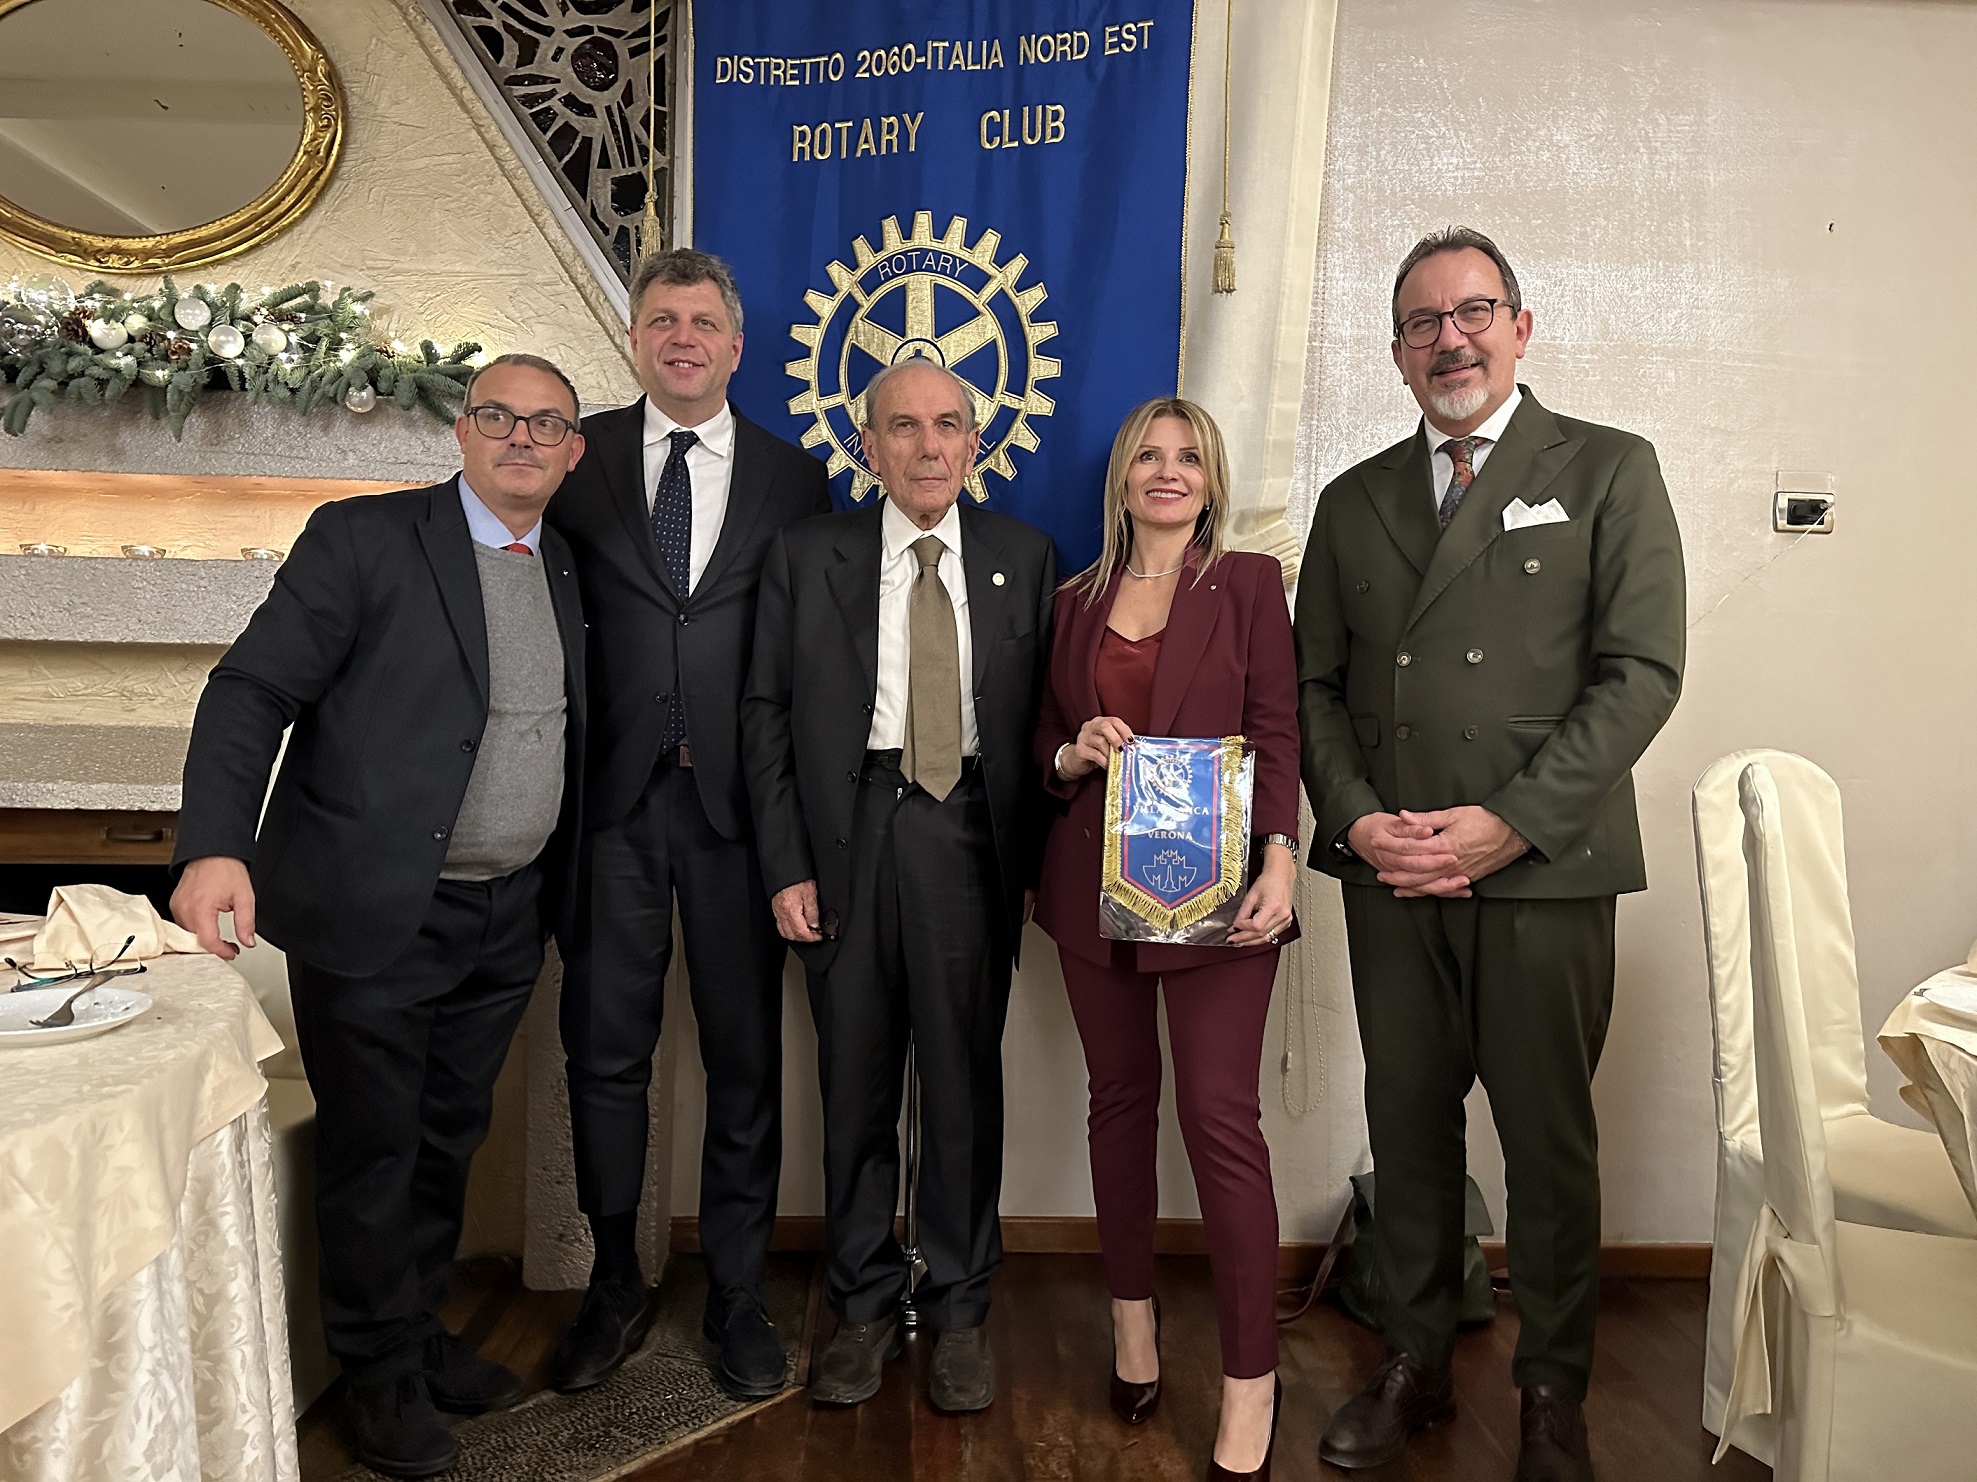 Rotary Club da sx Bontempini, Federico, Donadelli, Nicolis, Dall'Oca ph Museo Nicolis